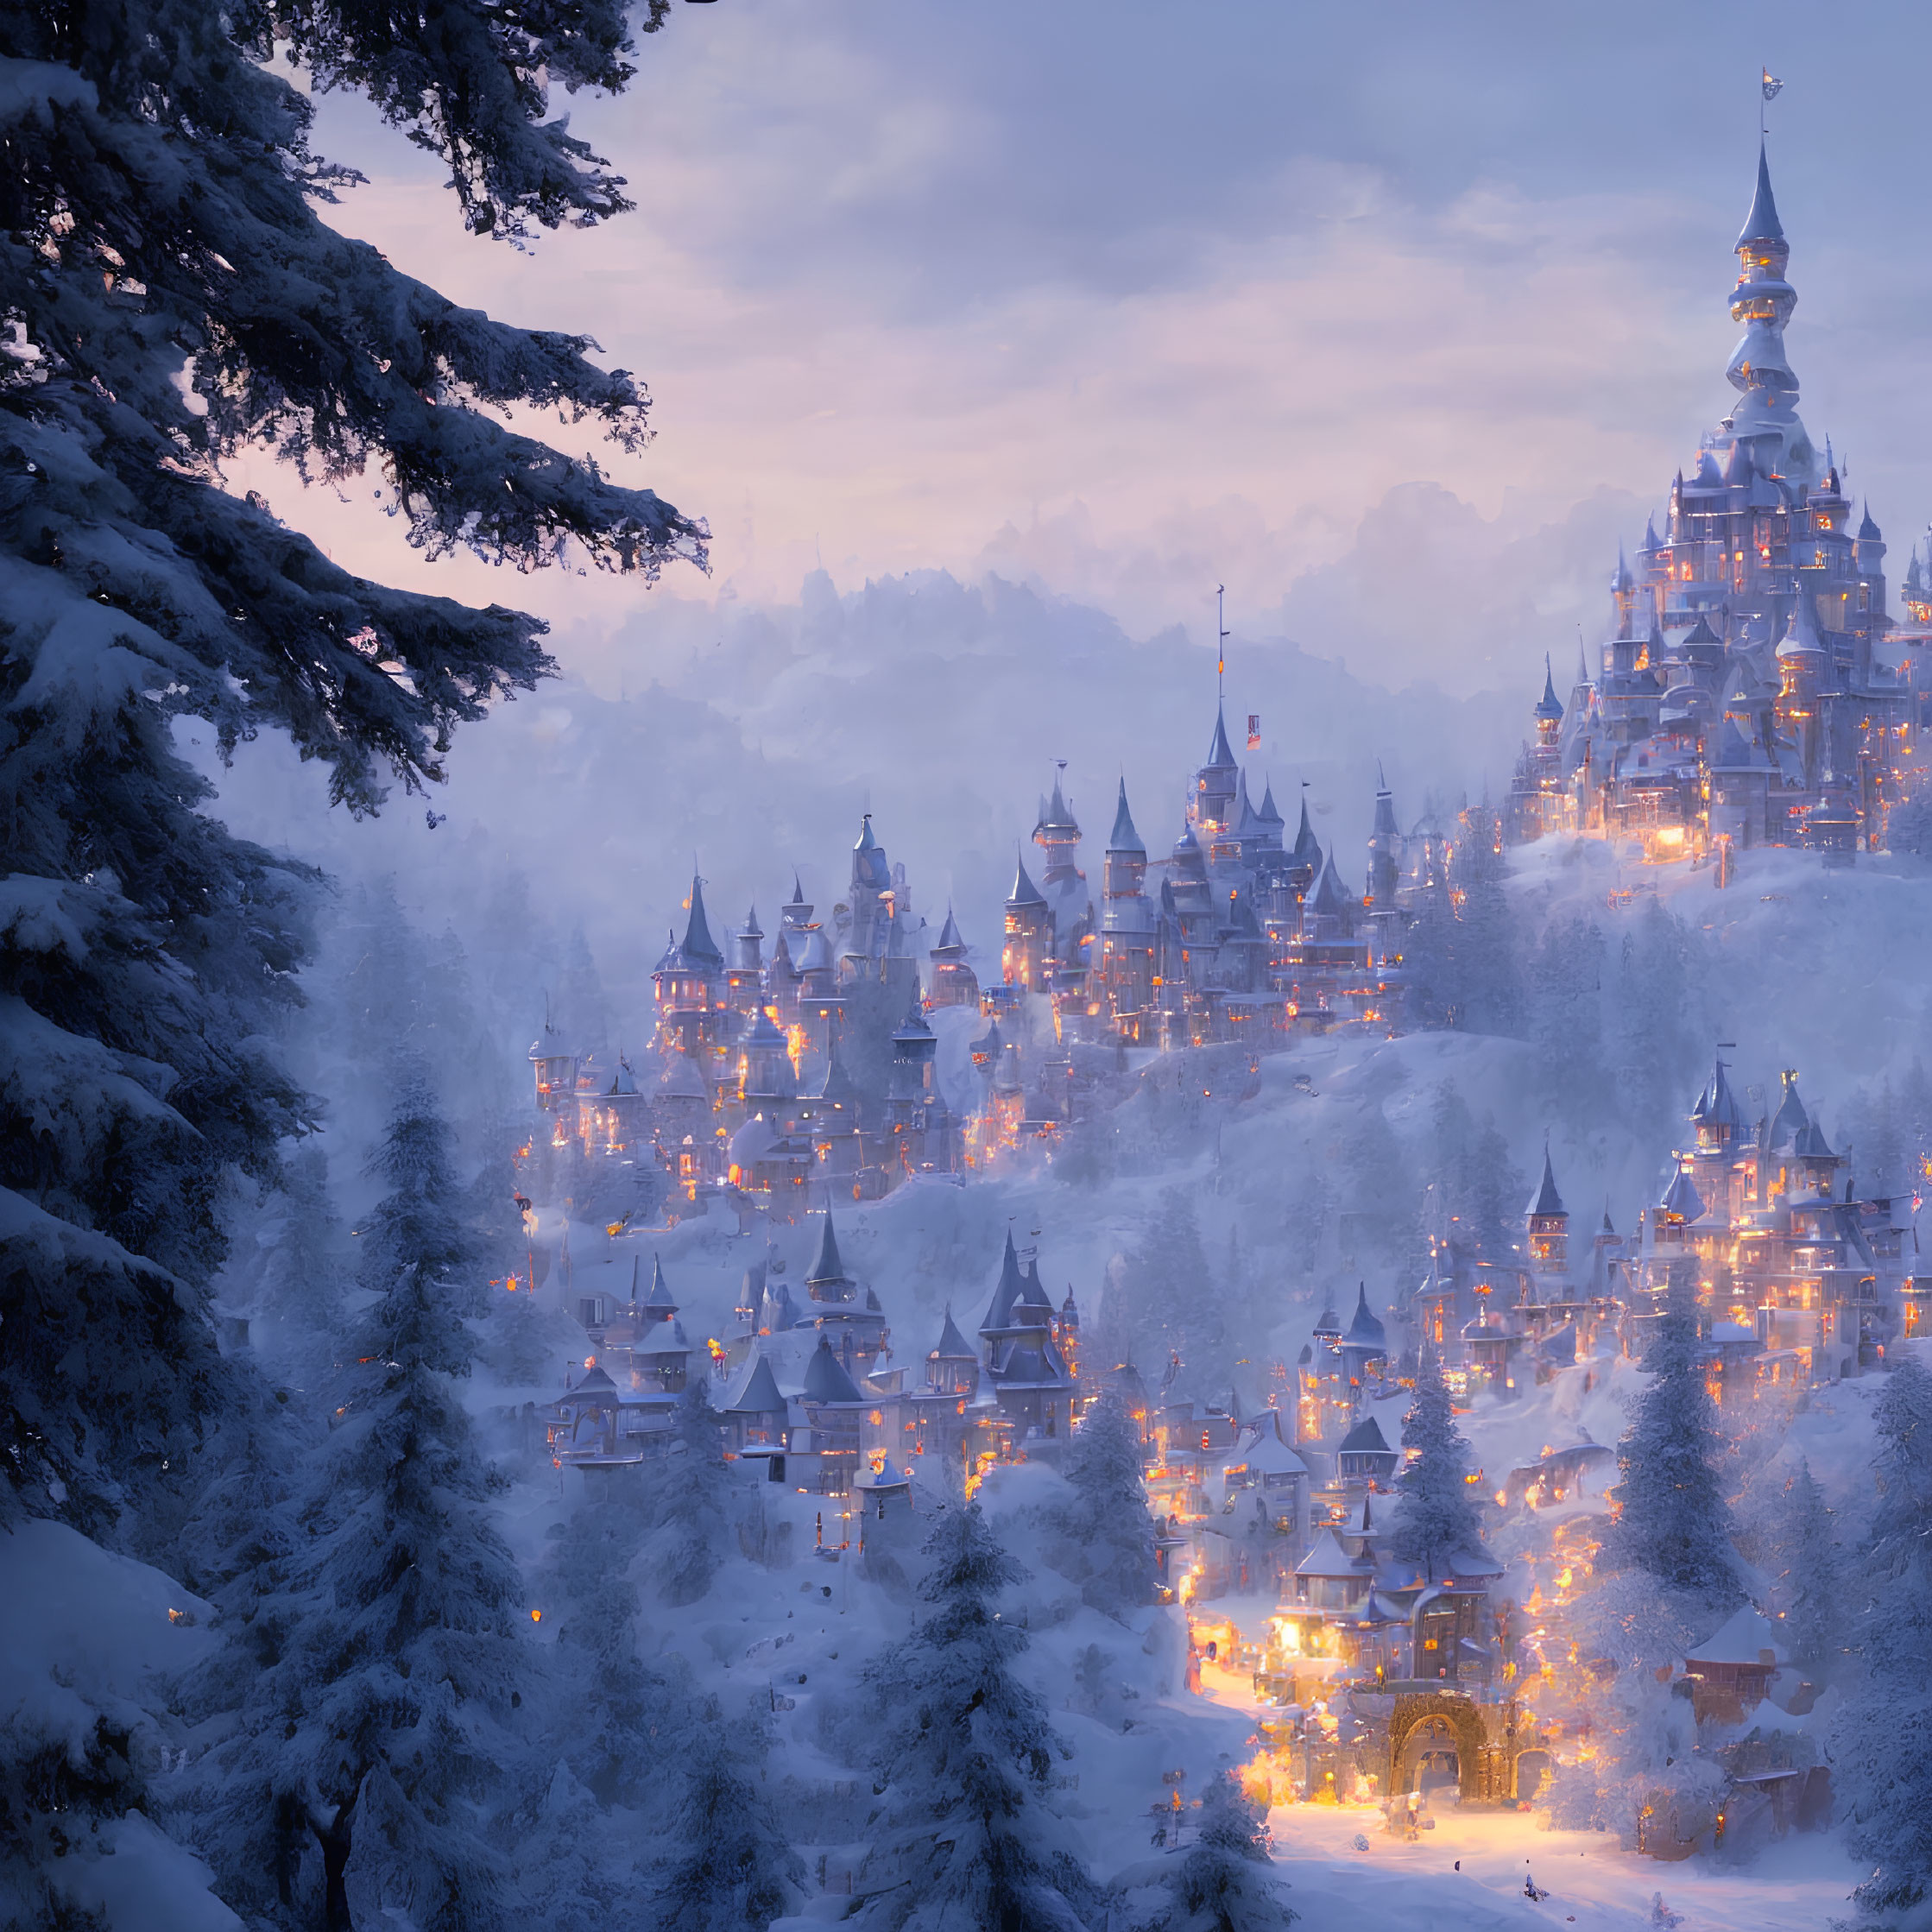 Grand illuminated castle in mystical winter scene